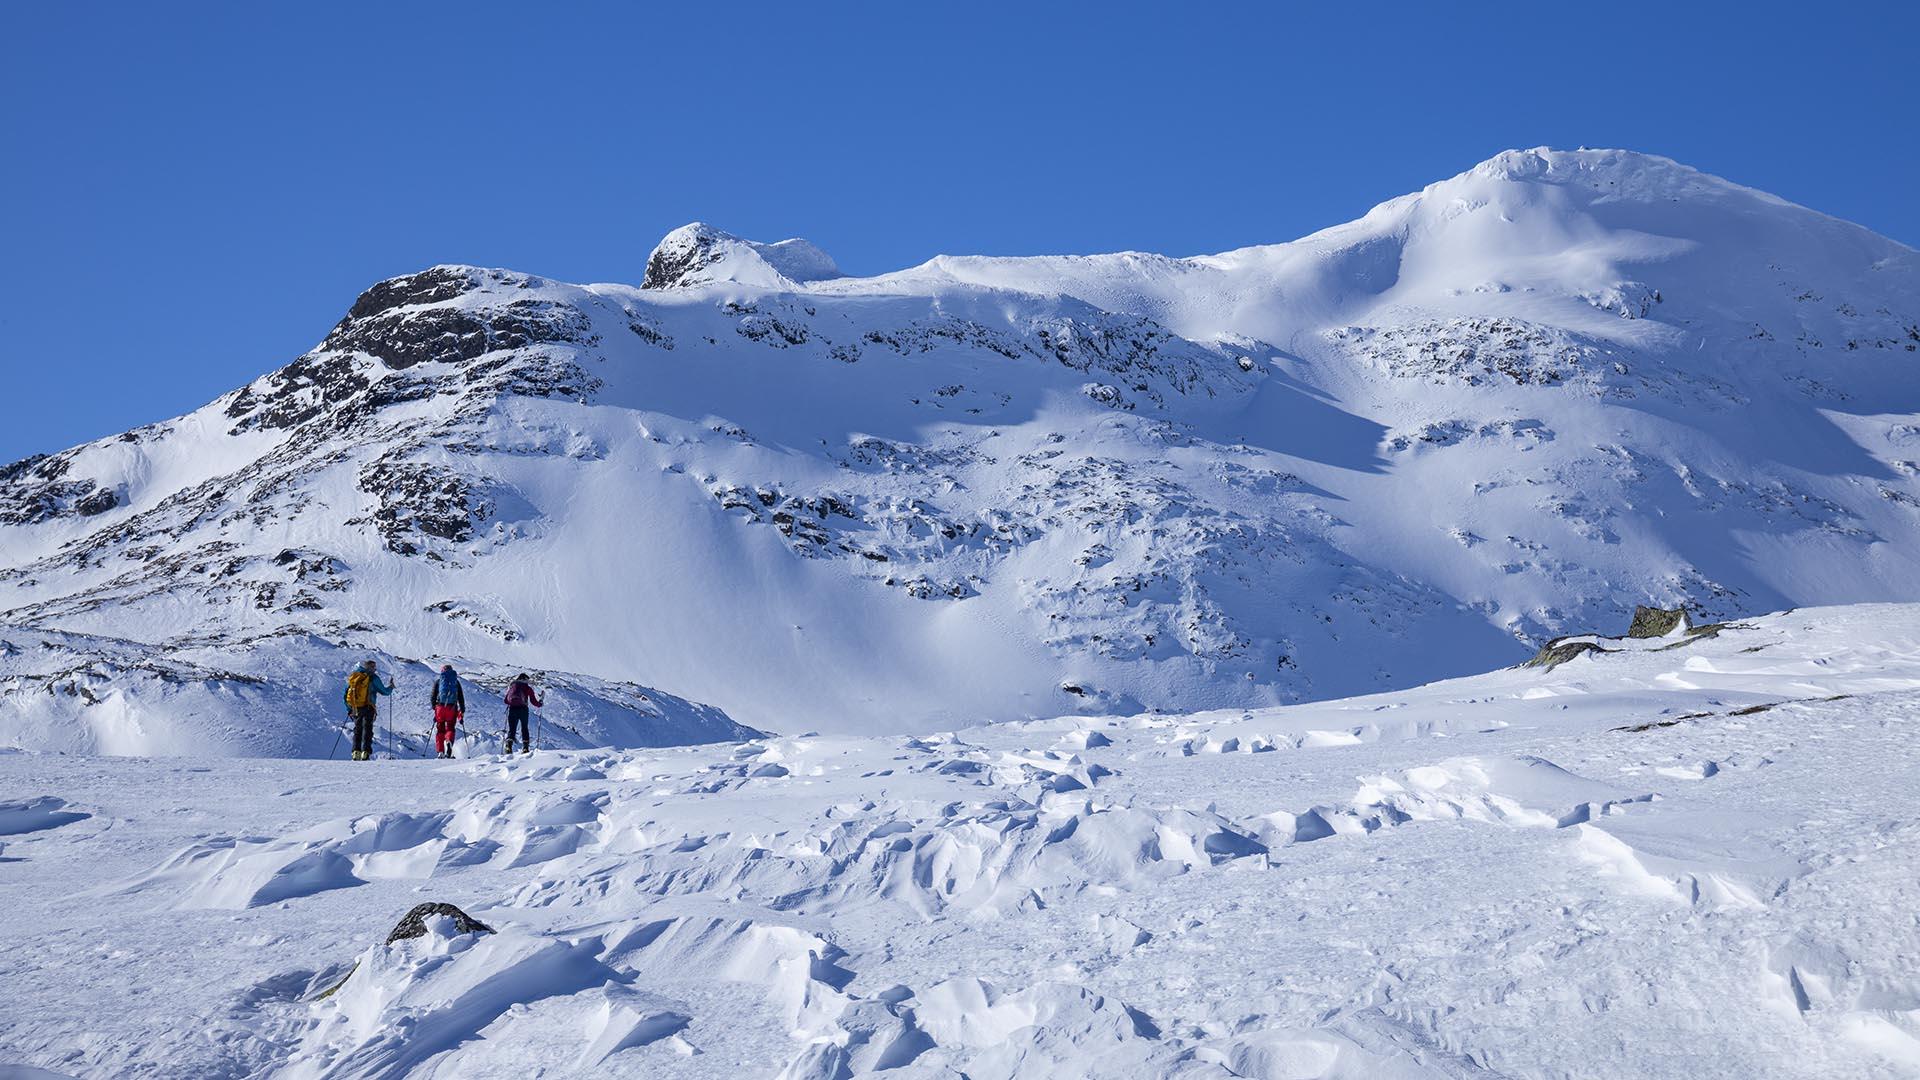 Et stykke unna ser vi tre skigåere i fjellet. Store fjell i bakgrunnen.